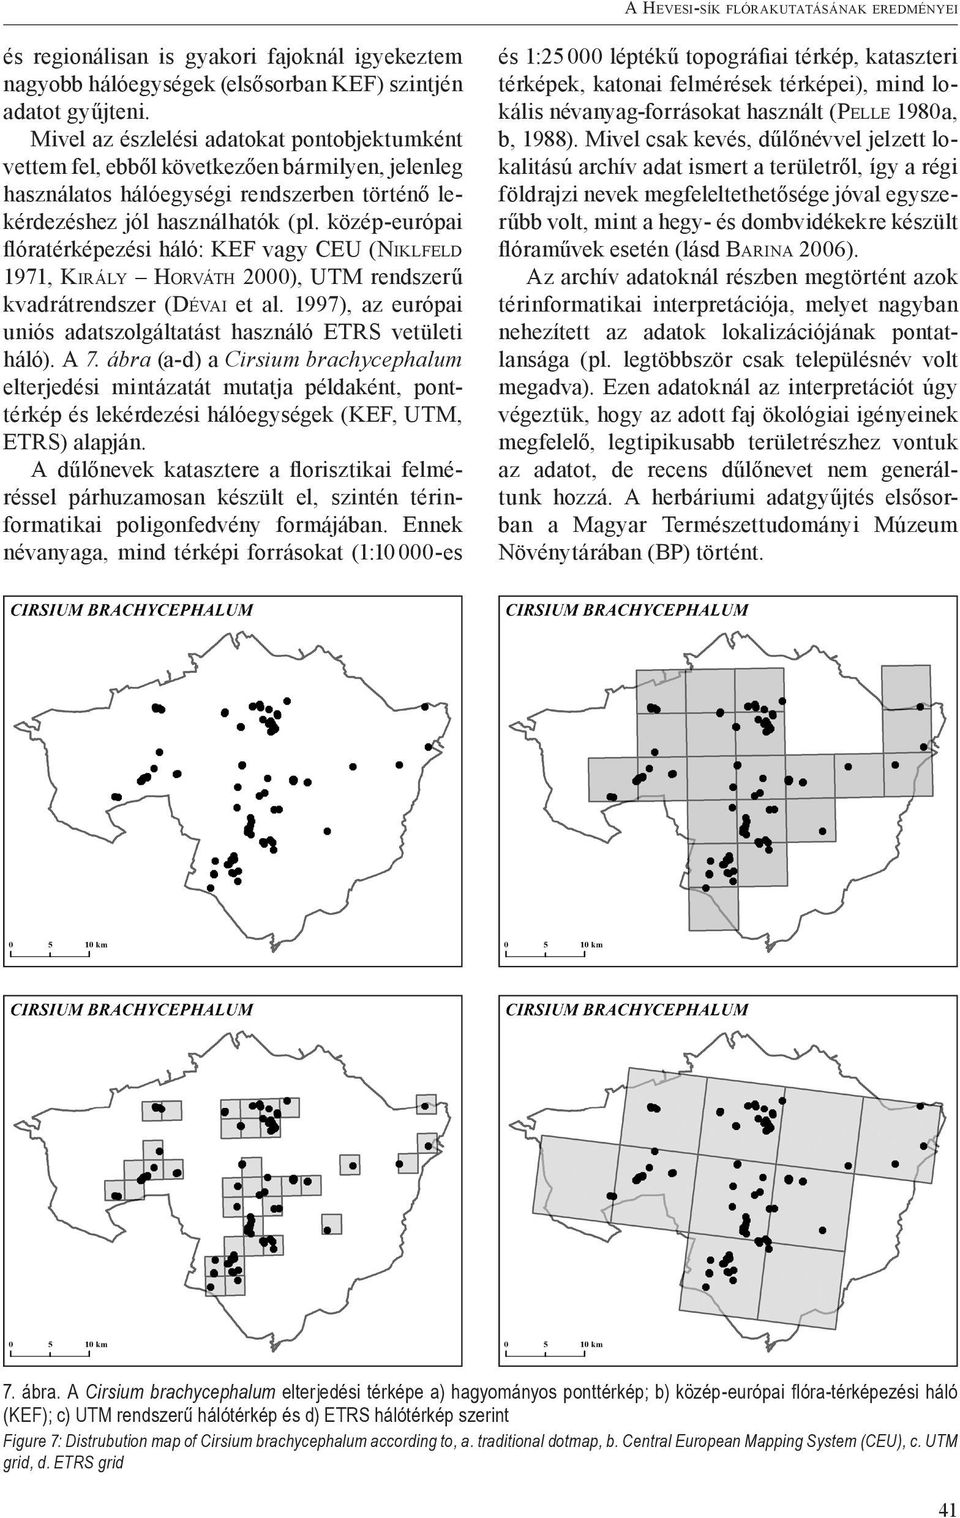 közép-európai flóratérképezési háló: KEF vagy CEU (Niklfeld 1971, Király Horváth 2000), UTM rendszerű kvadrátrendszer (Dévai et al.